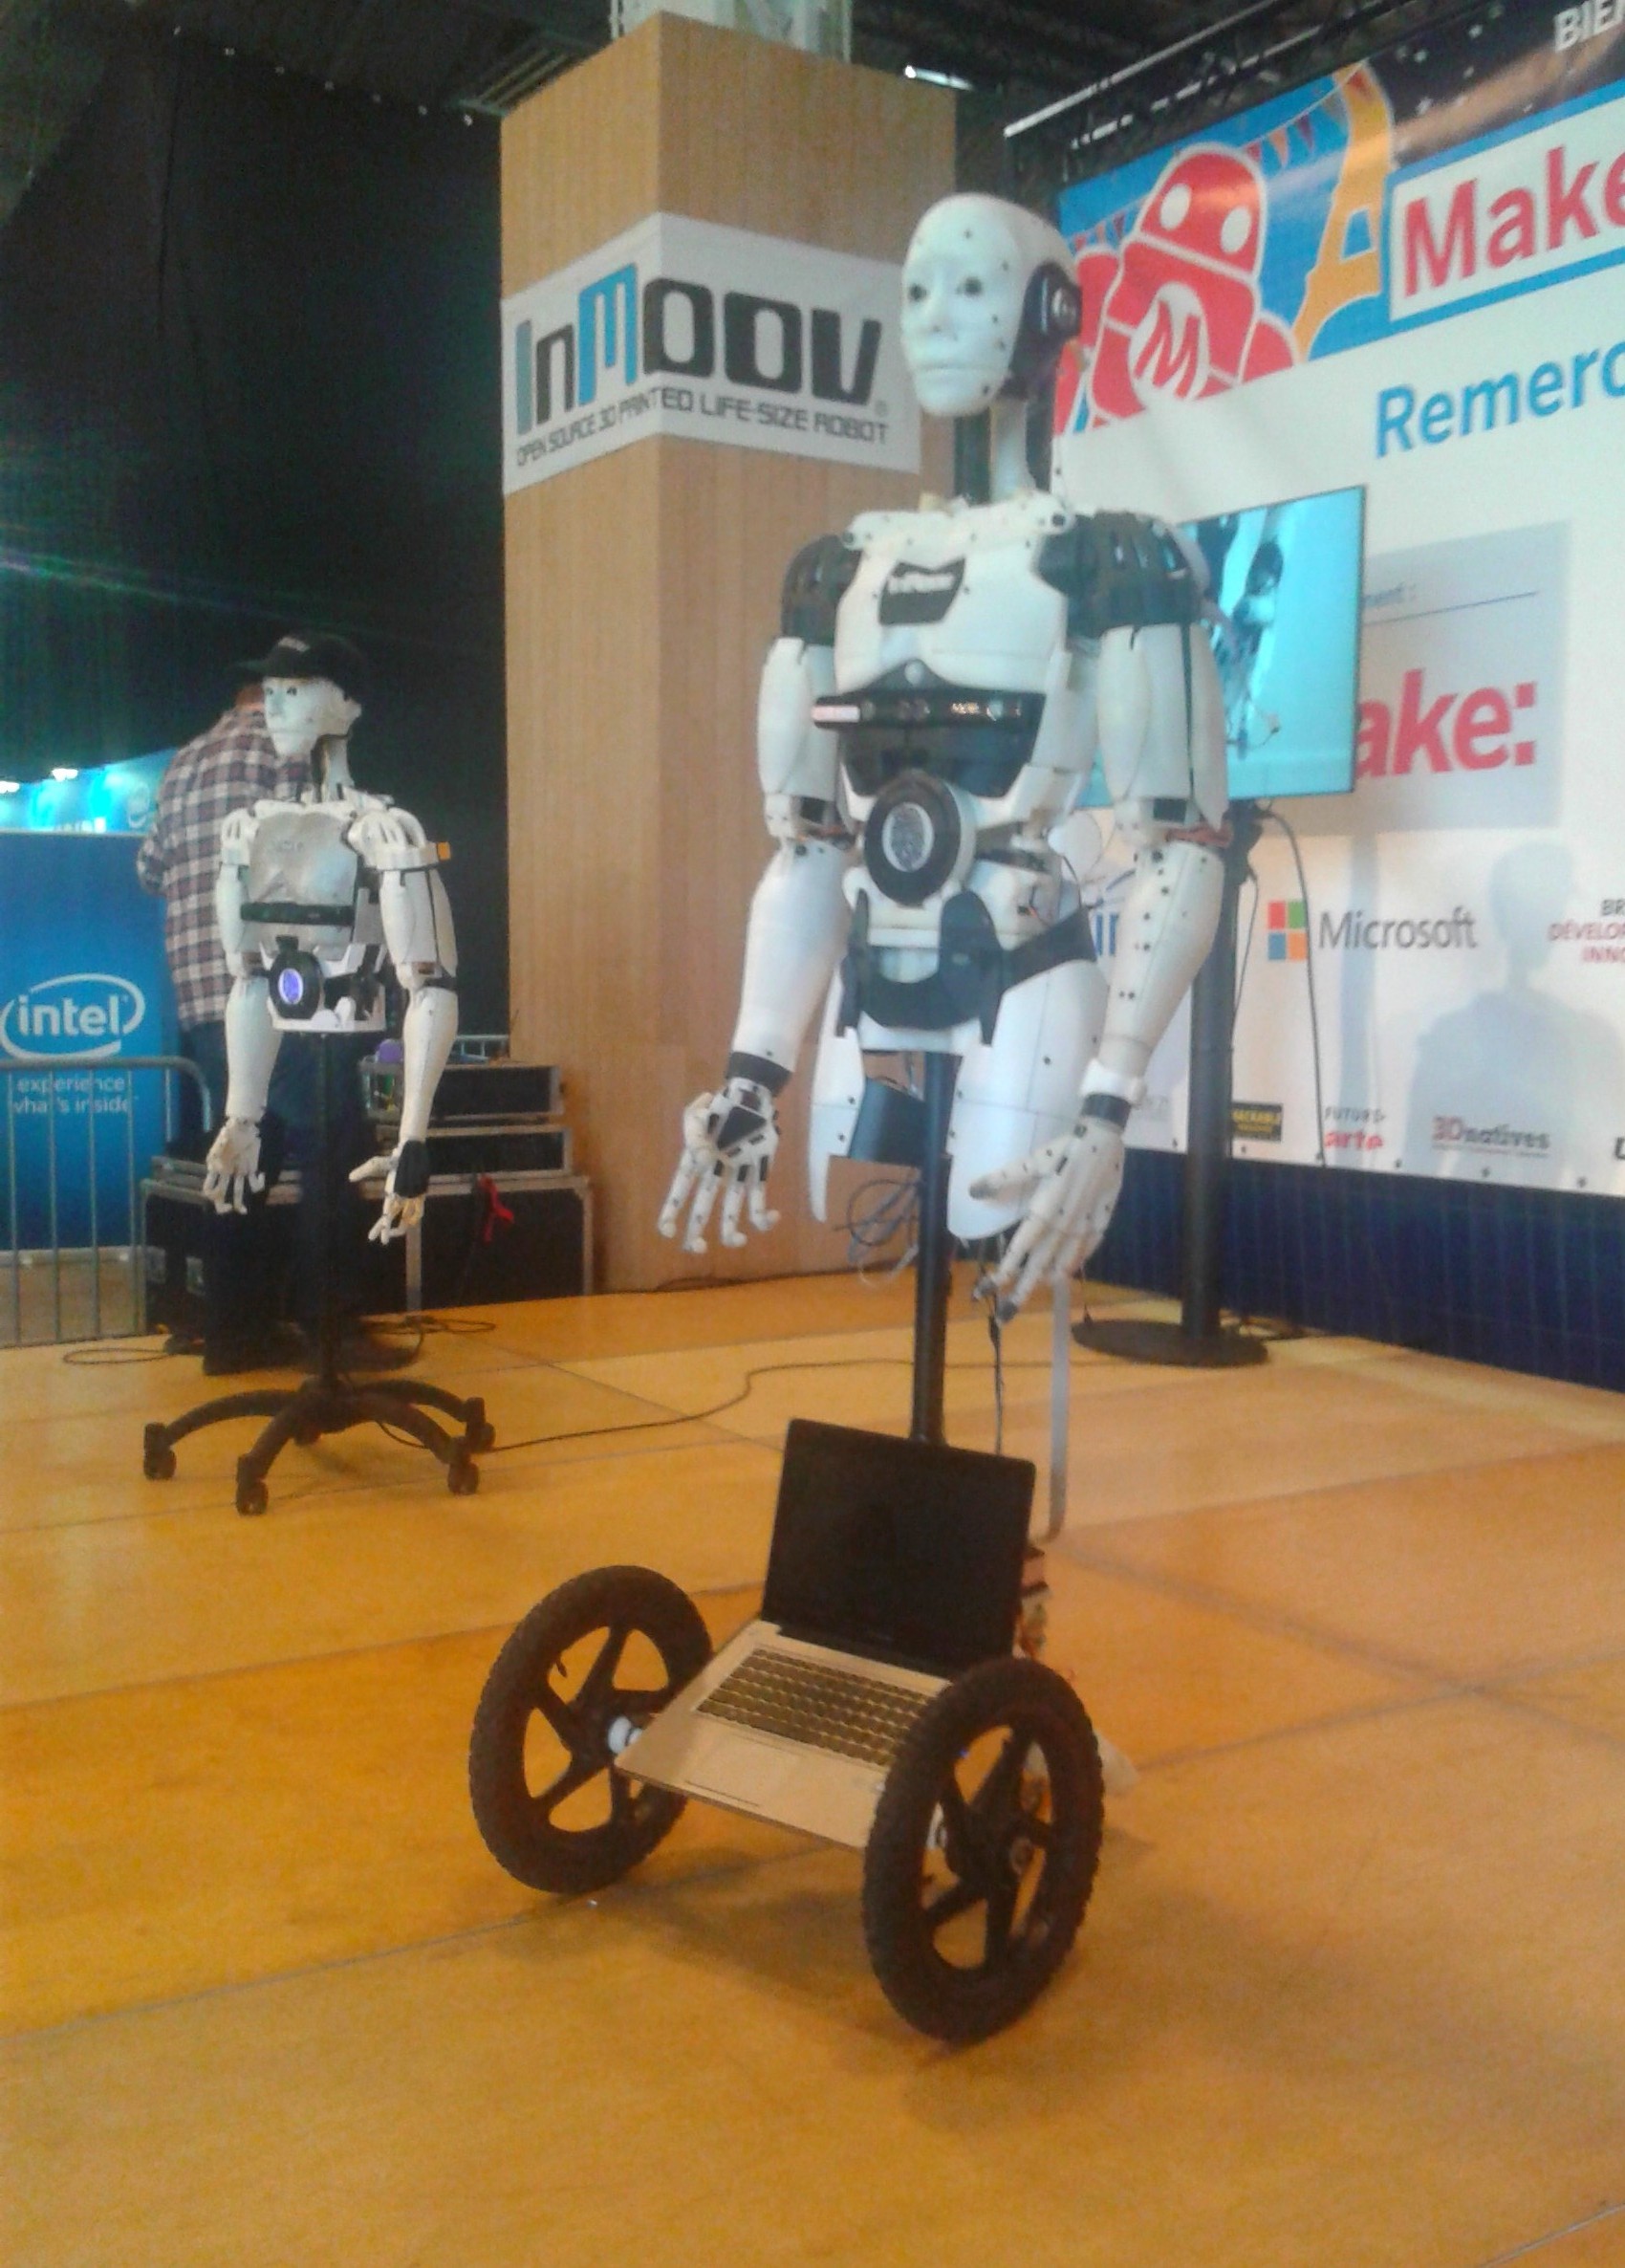 Des robots en démonstration lors de la deuxième édition de la Maker Faire, à Paris.